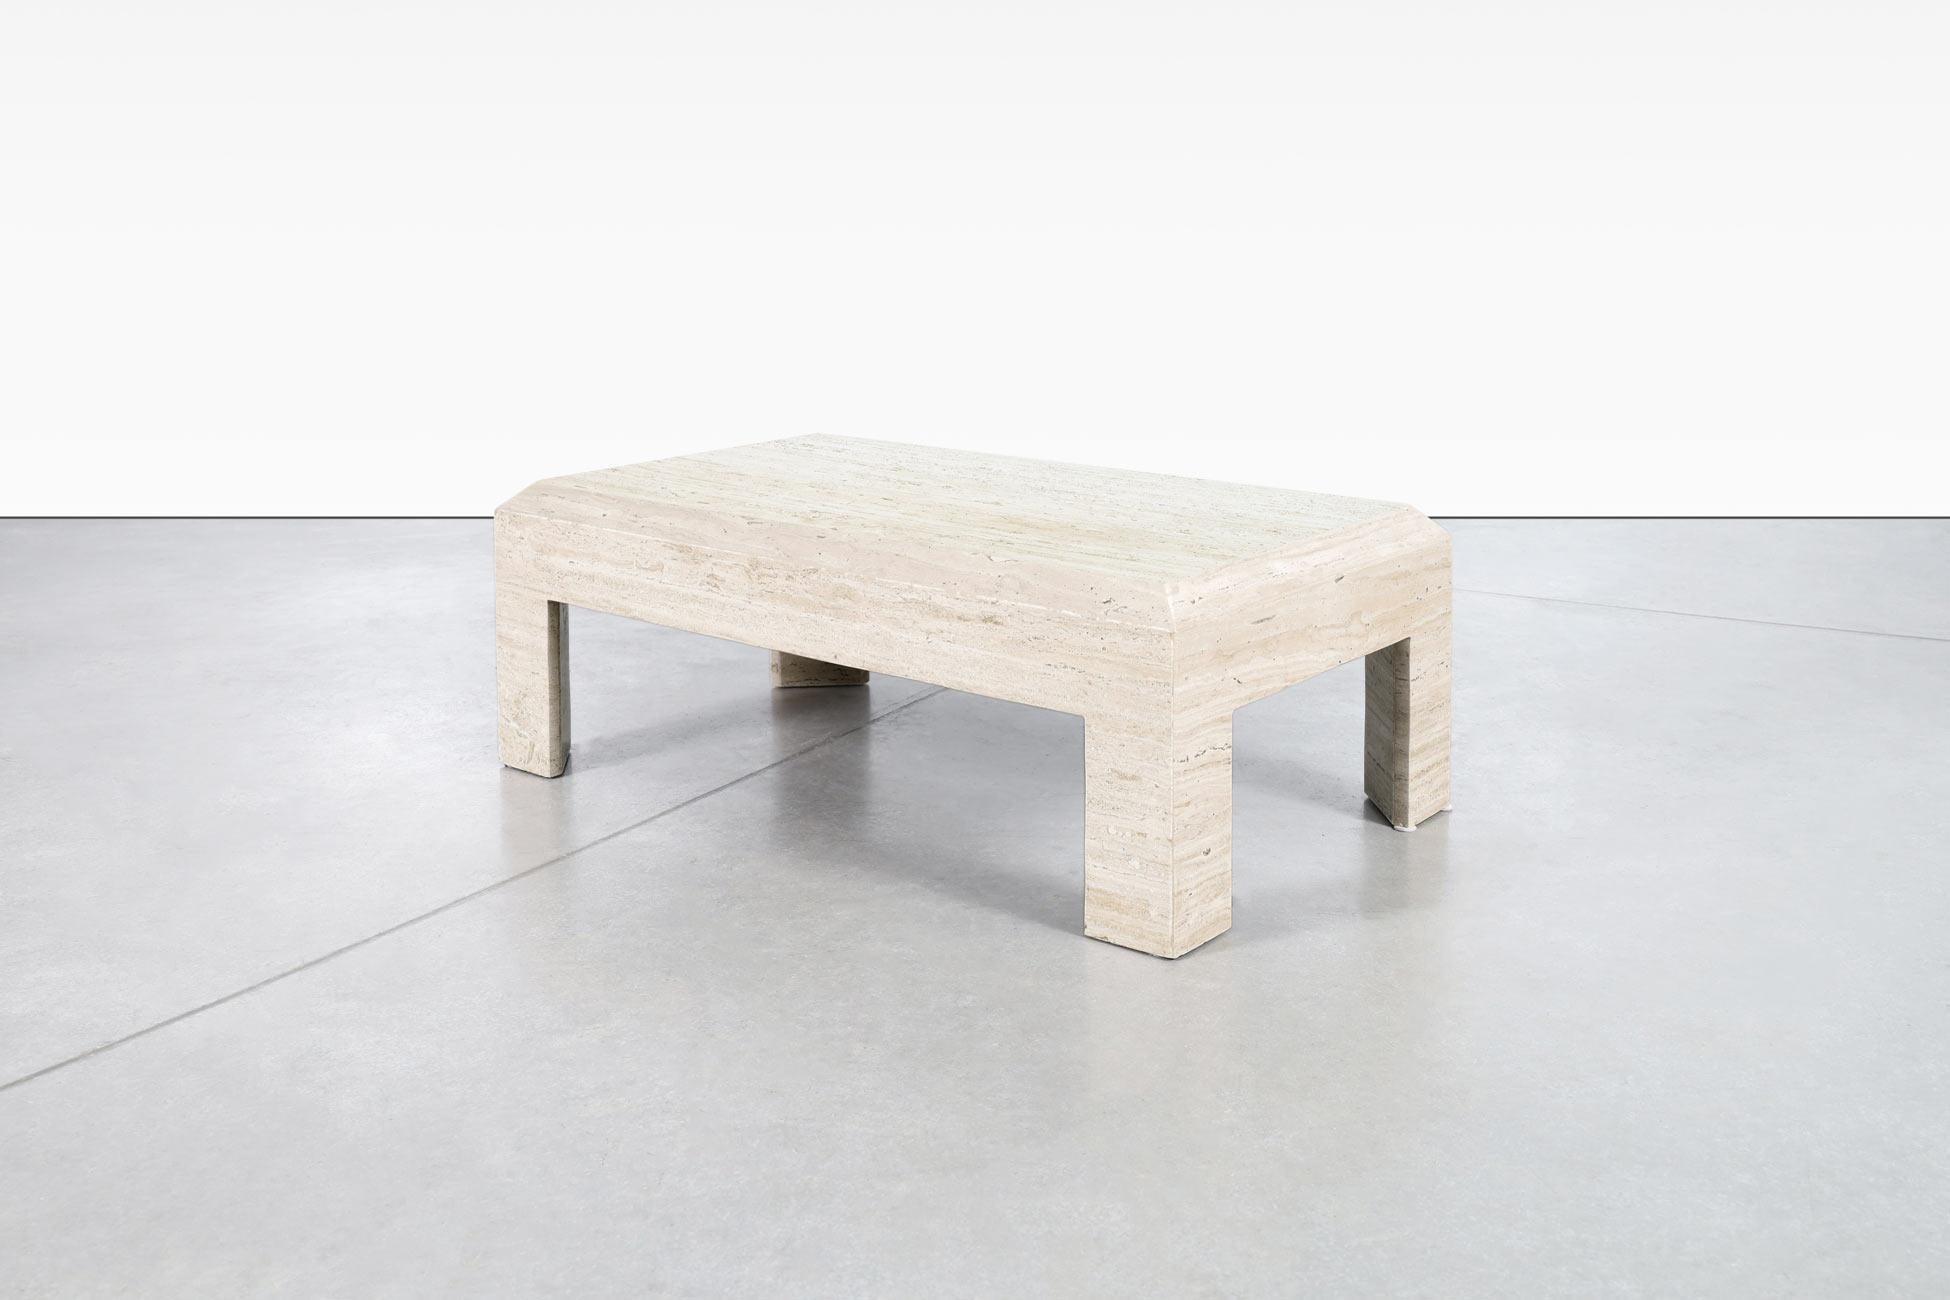 Magnifique table basse moderniste italienne en travertin conçue en Italie, vers les années 1970. La combinaison des minéraux naturels qui composent la pierre de travertin s'écoule magnifiquement à travers les tables. La table est dotée d'un plateau